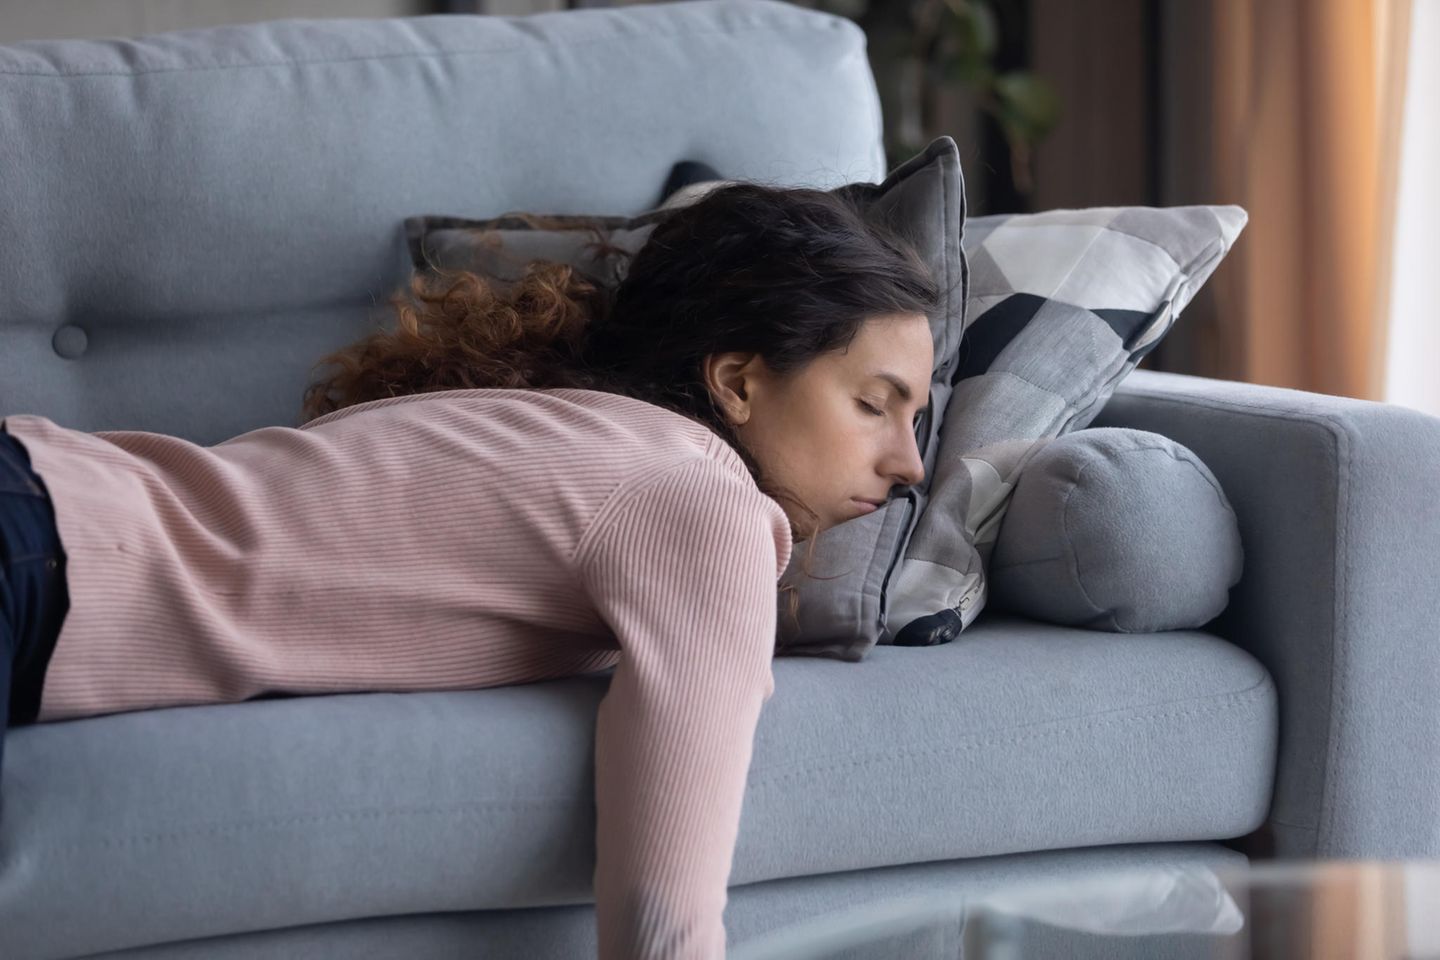 Corona-Tagebuch einer Mutter: Frau liegt erschöpft auf Sofa